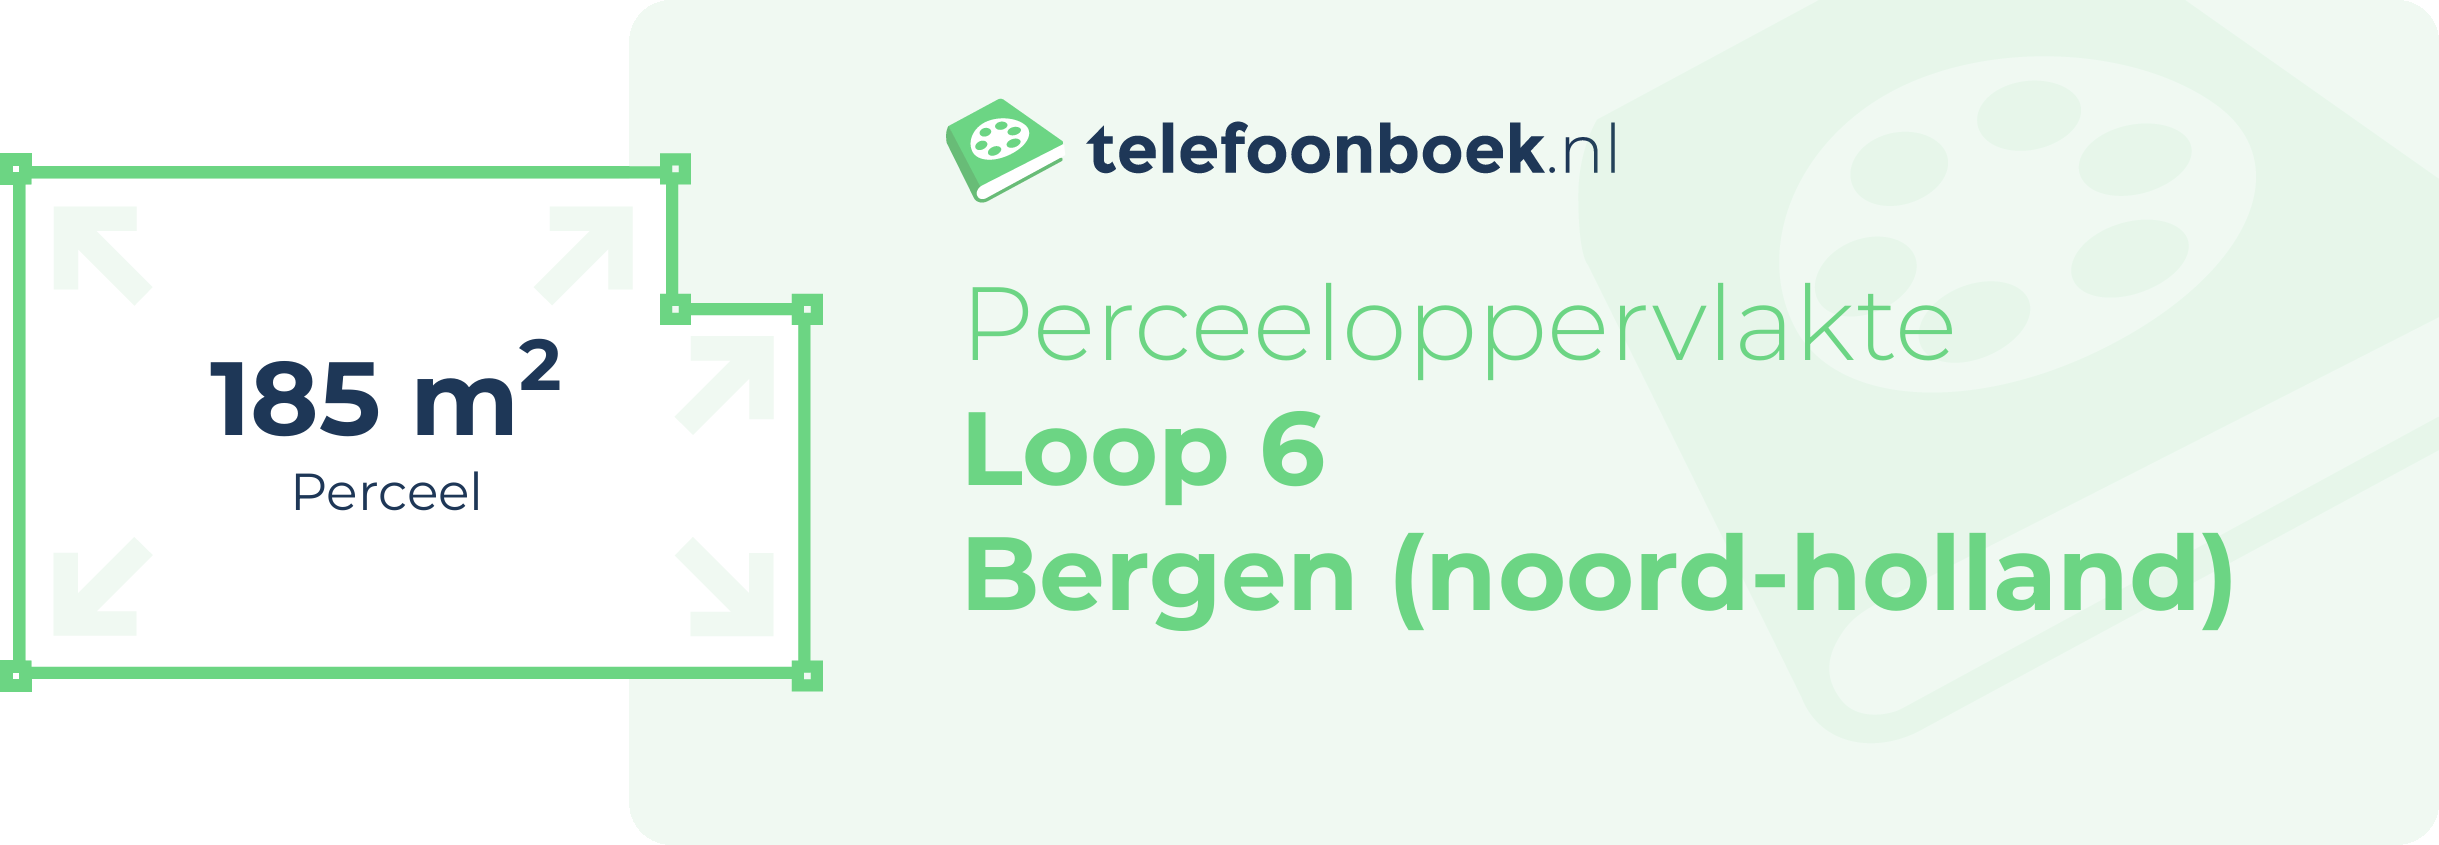 Perceeloppervlakte Loop 6 Bergen (Noord-Holland)